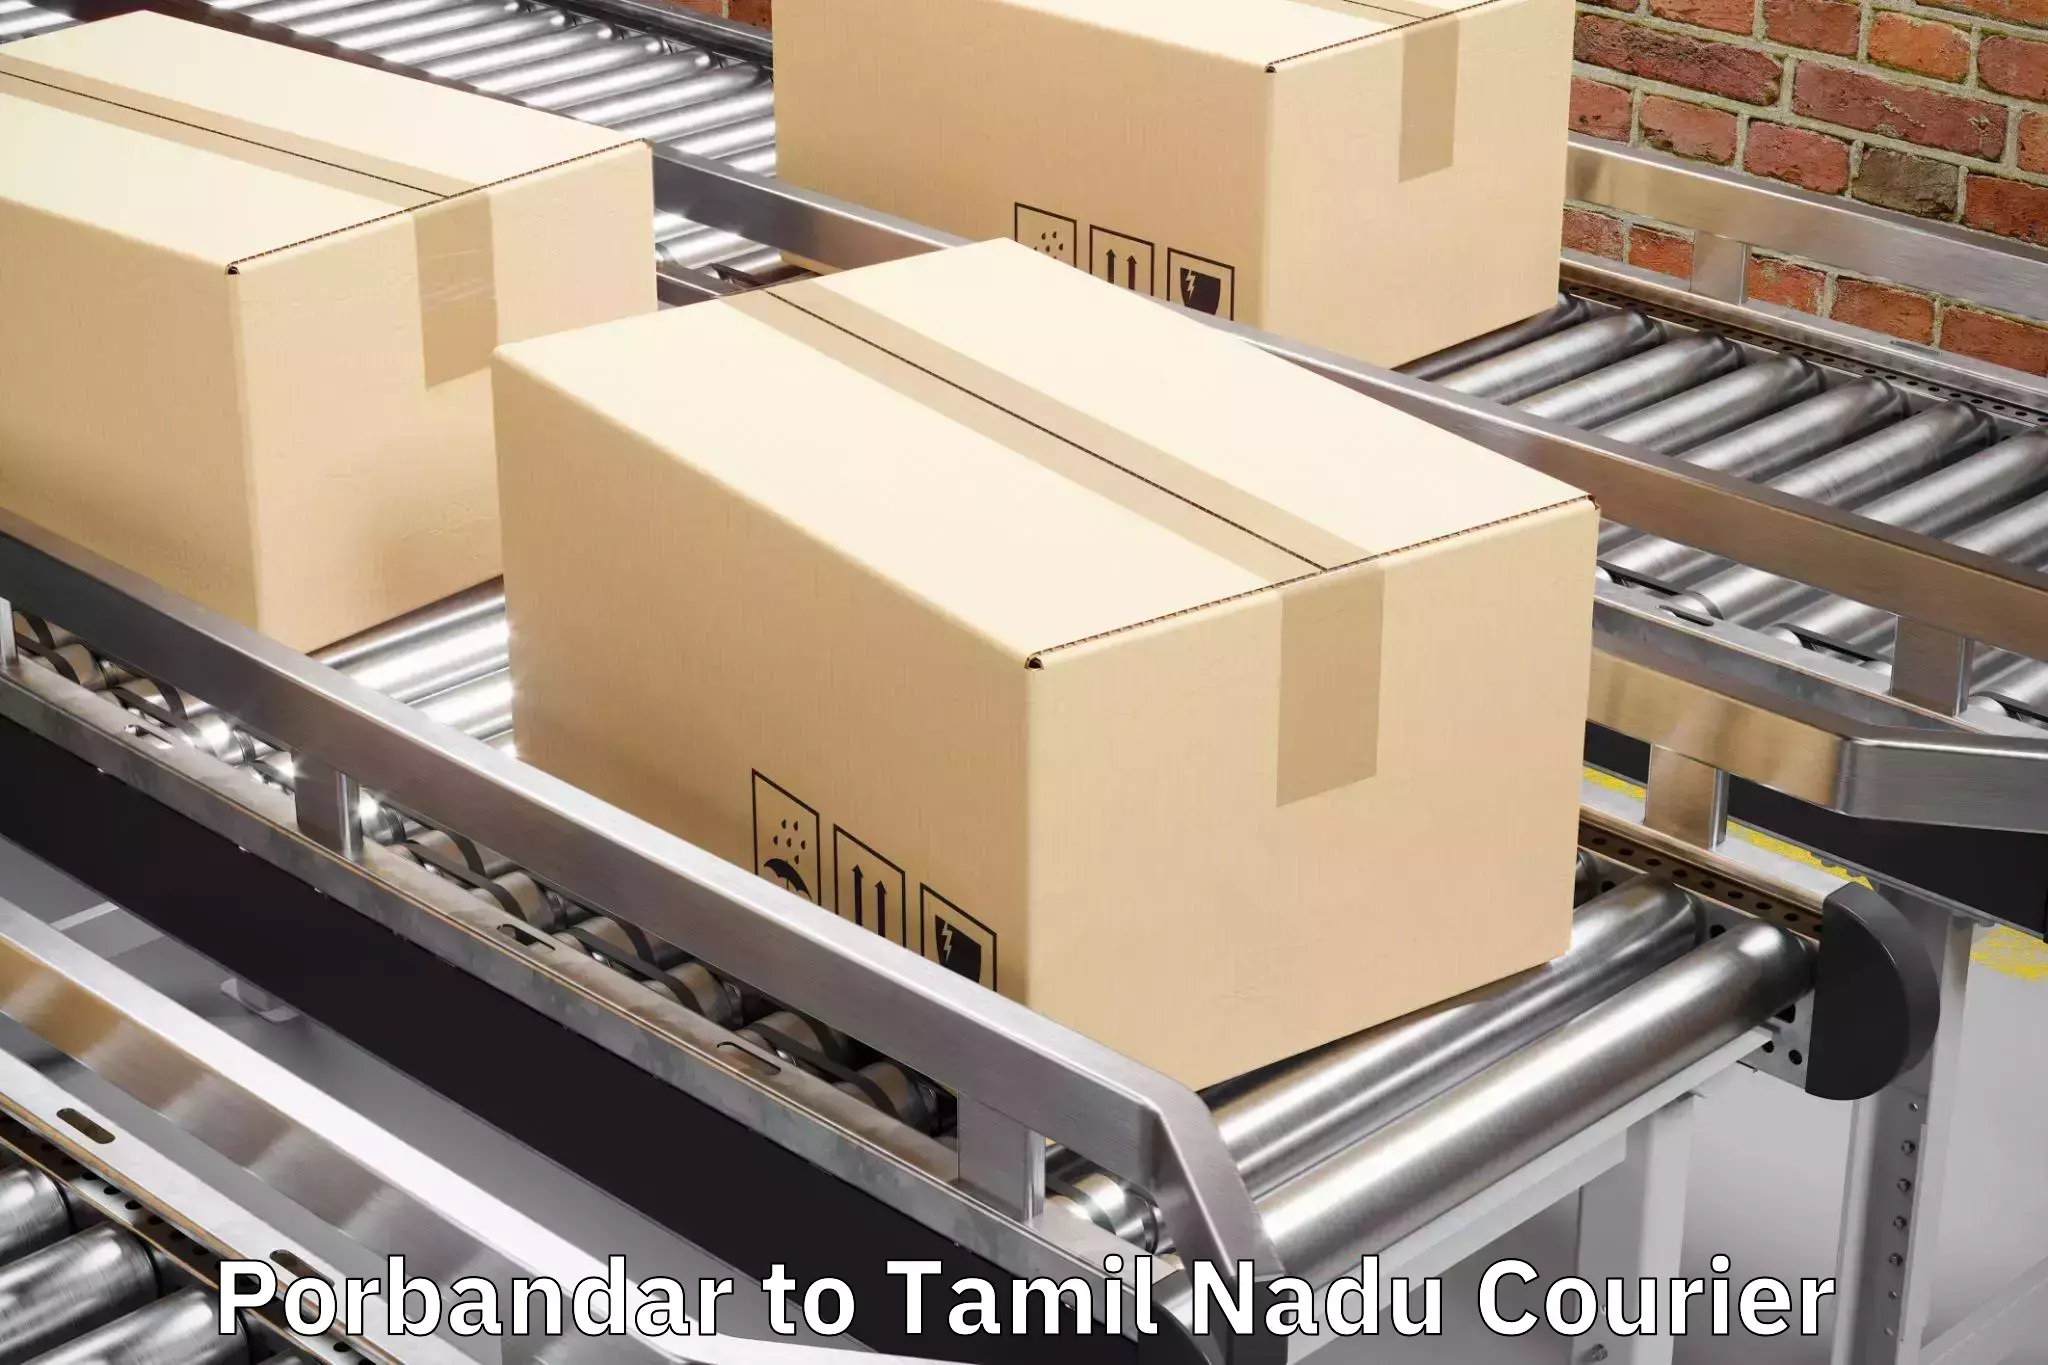 Door-to-door baggage service Porbandar to Madurai